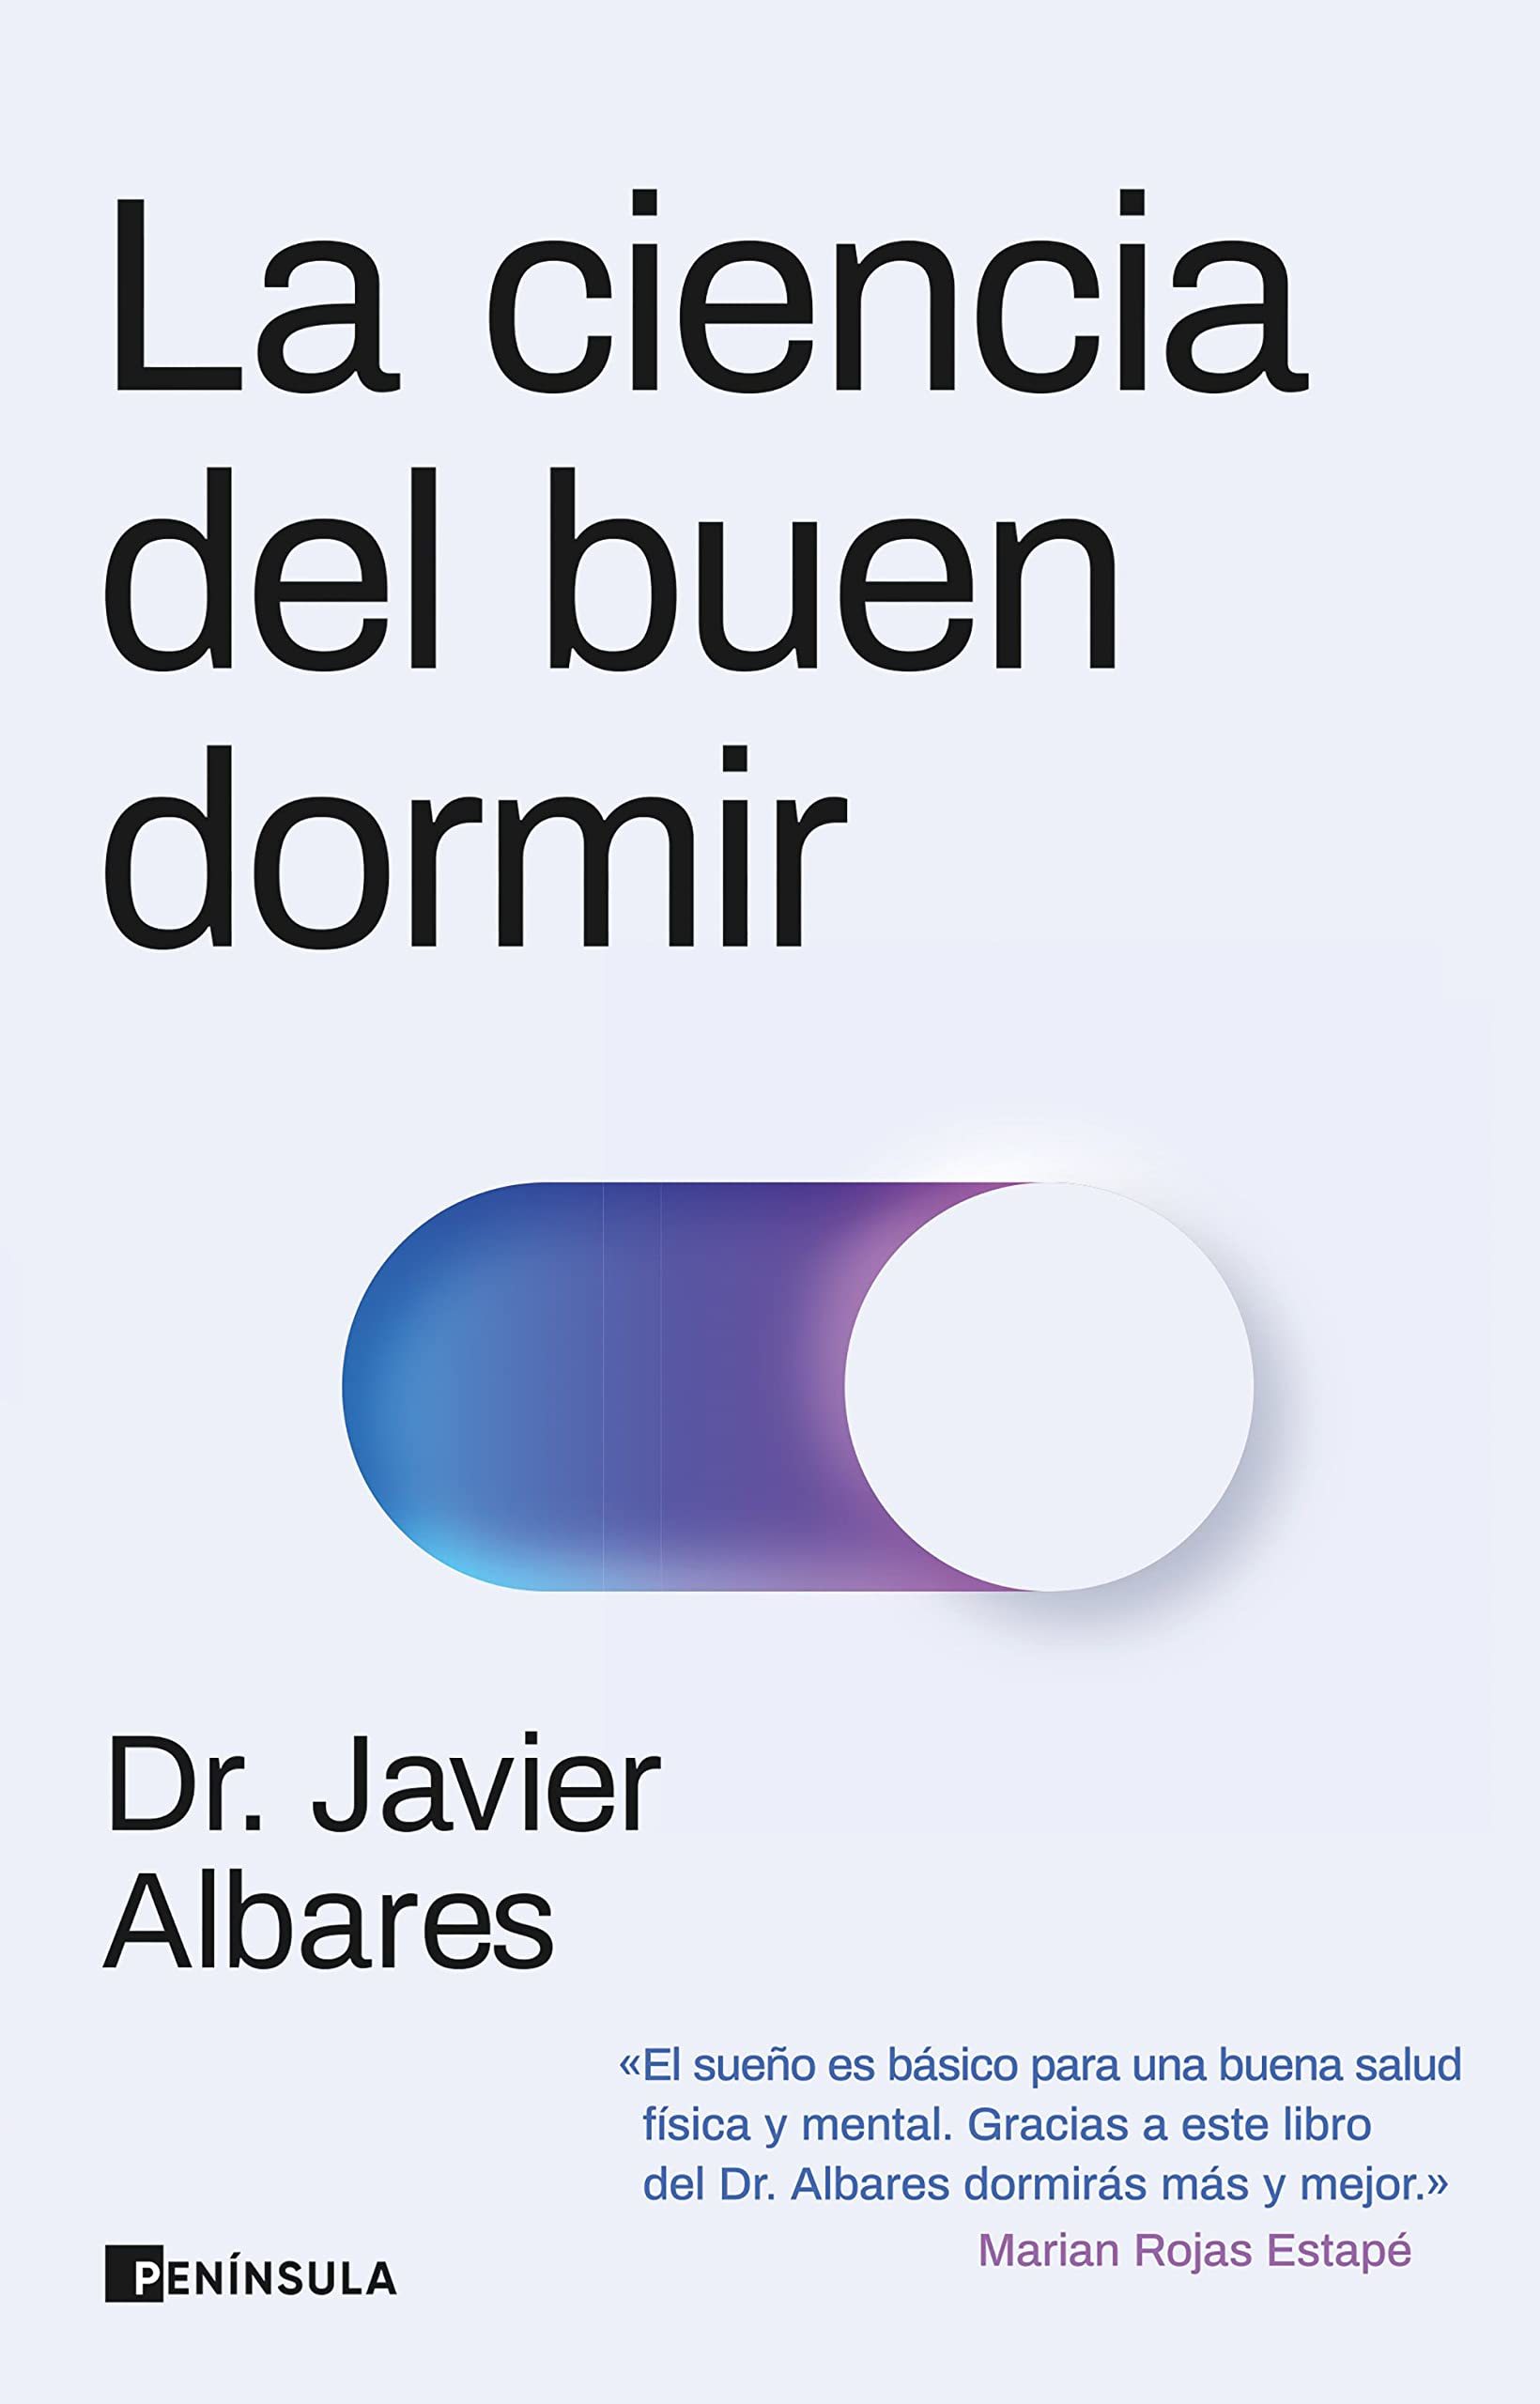 La ciencia del buen dormir, doctor Javier Albares (Ed. Península)